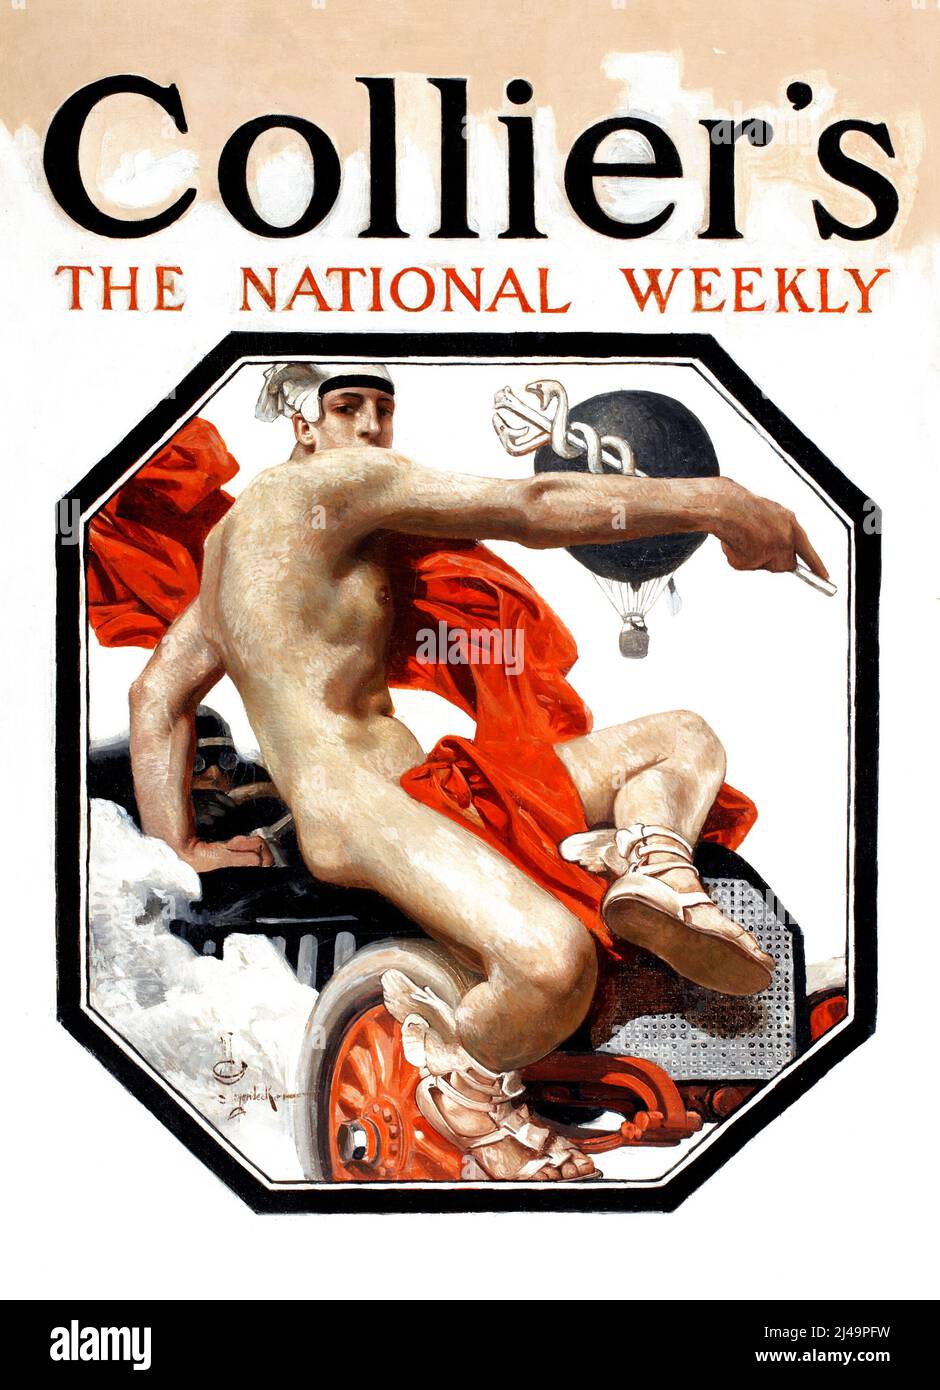 Collier's The National Weekly par JC Leyendecker - affiche de la Marine de la première Guerre mondiale, études préliminaires (1917) Banque D'Images